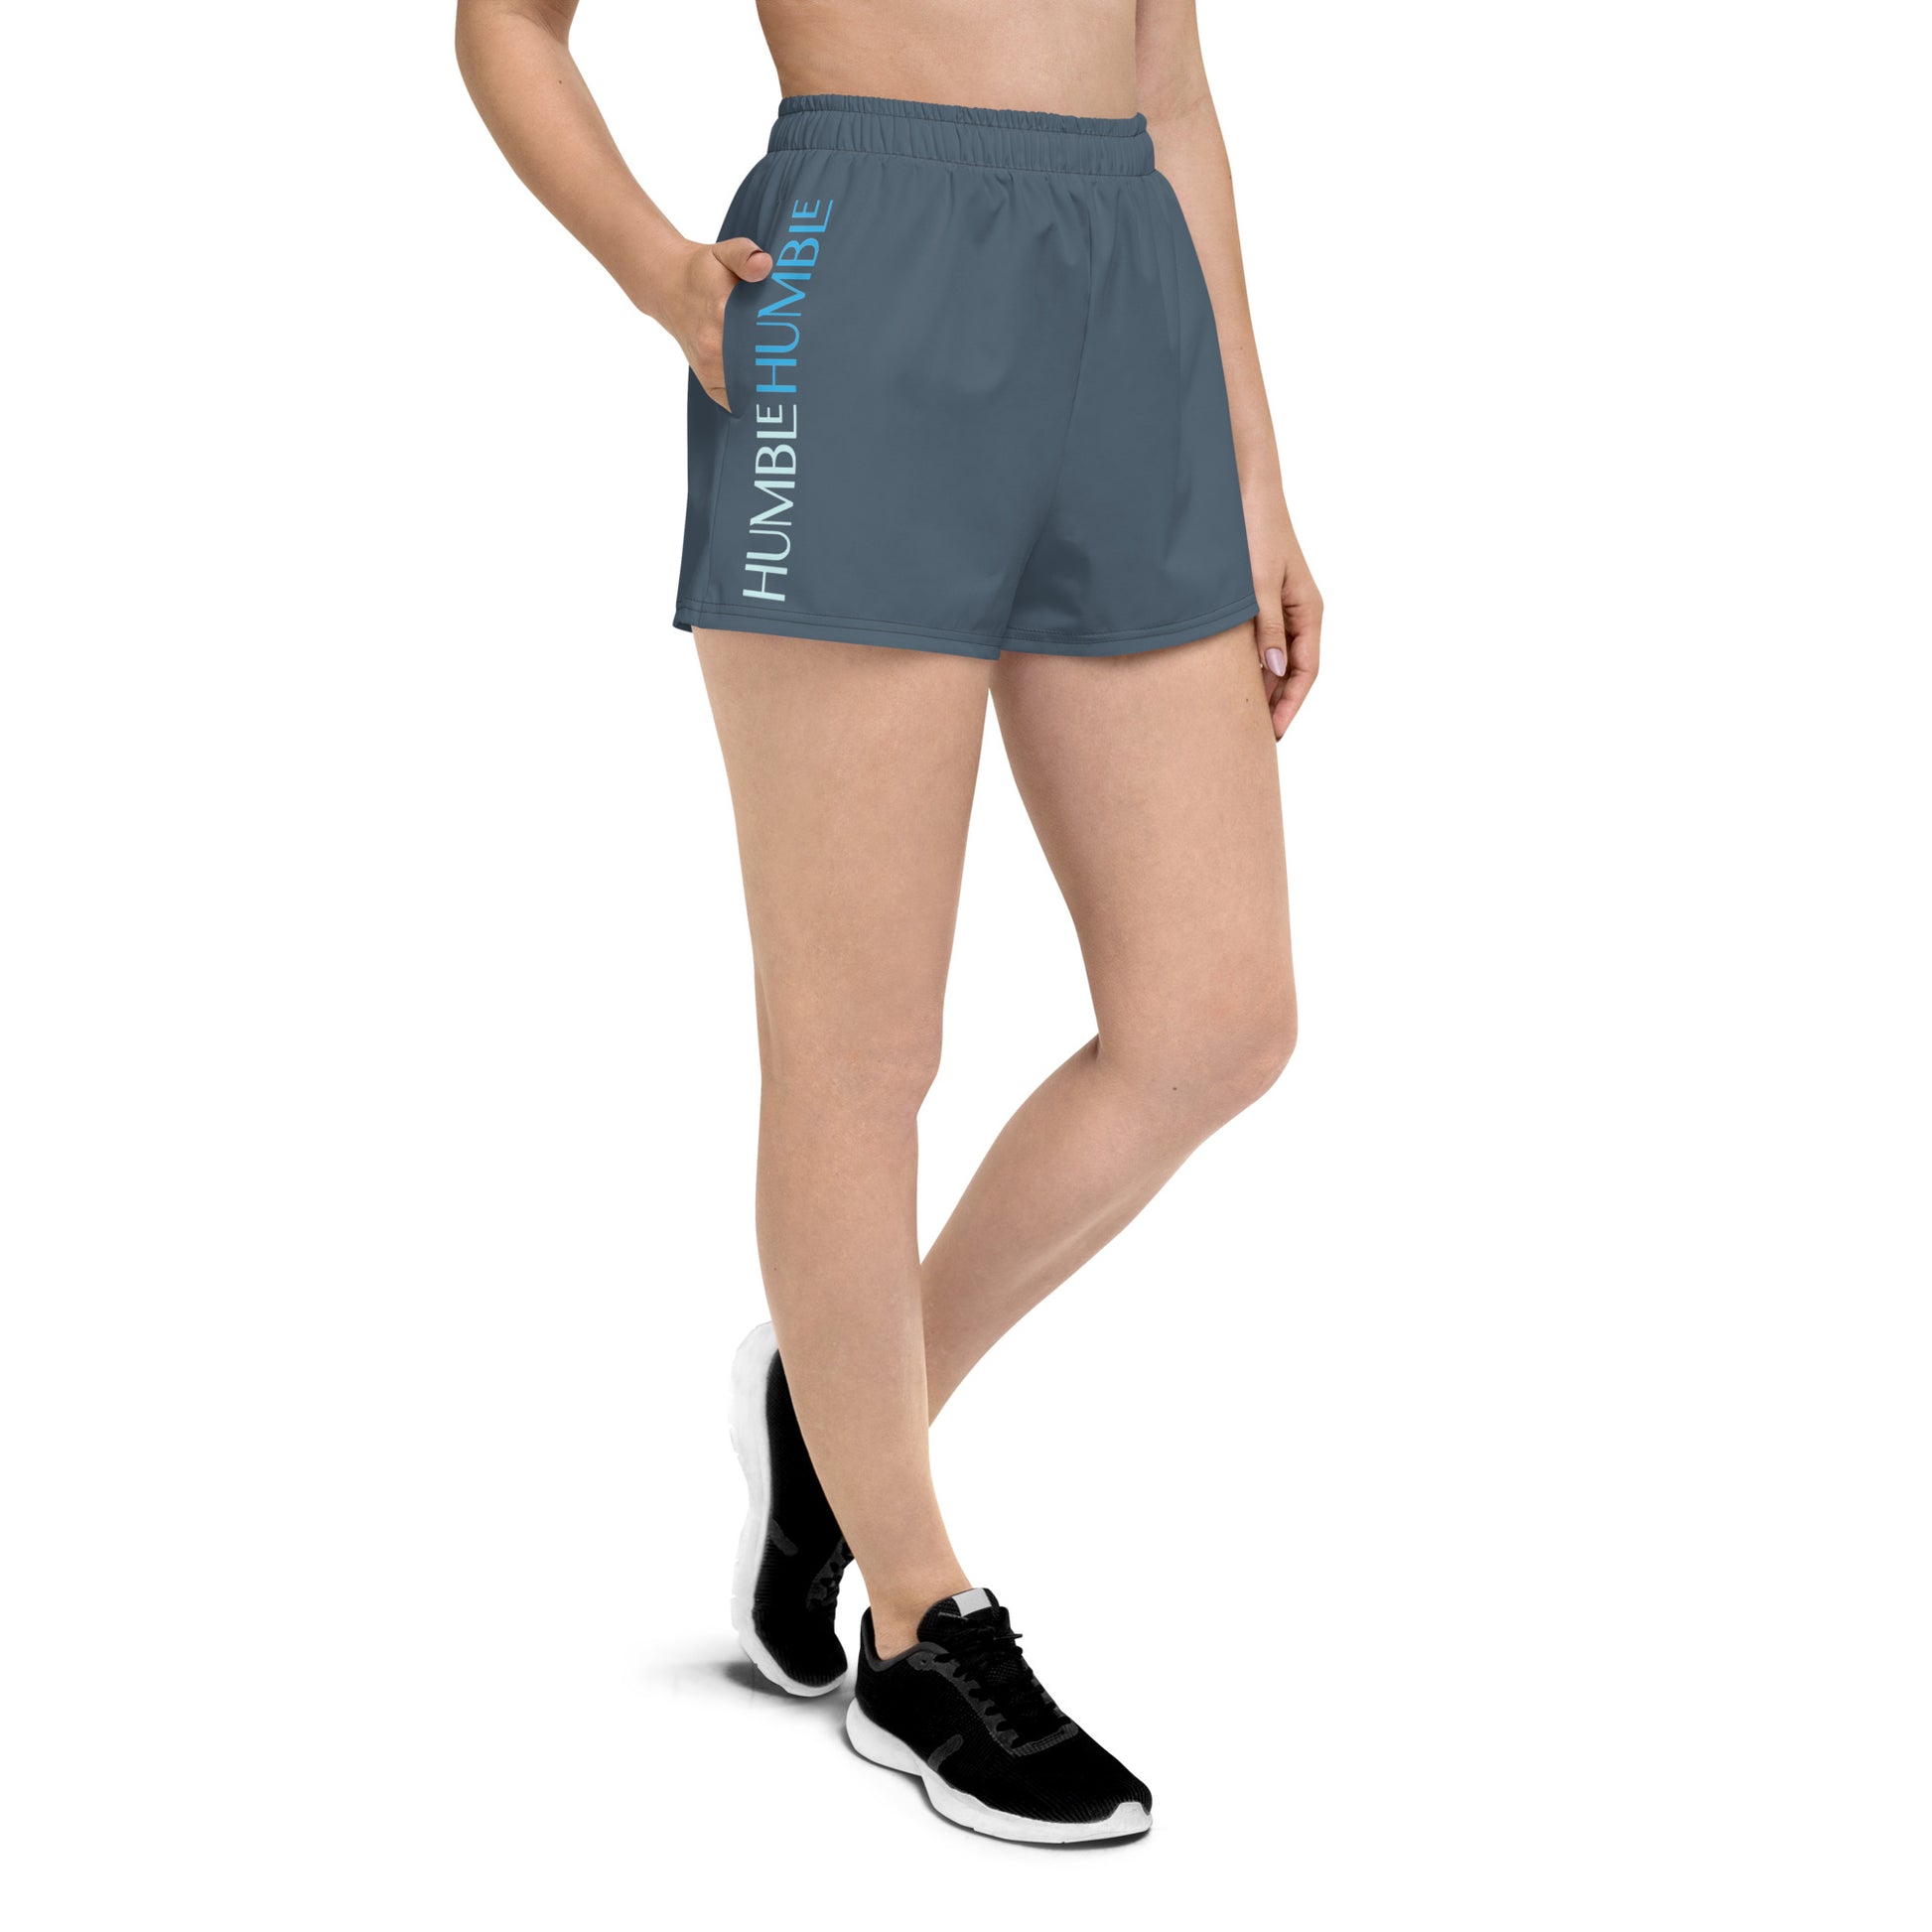 Humble Sportswear, women's eco-friendly shorts, women’s color match shorts, running shorts for women 